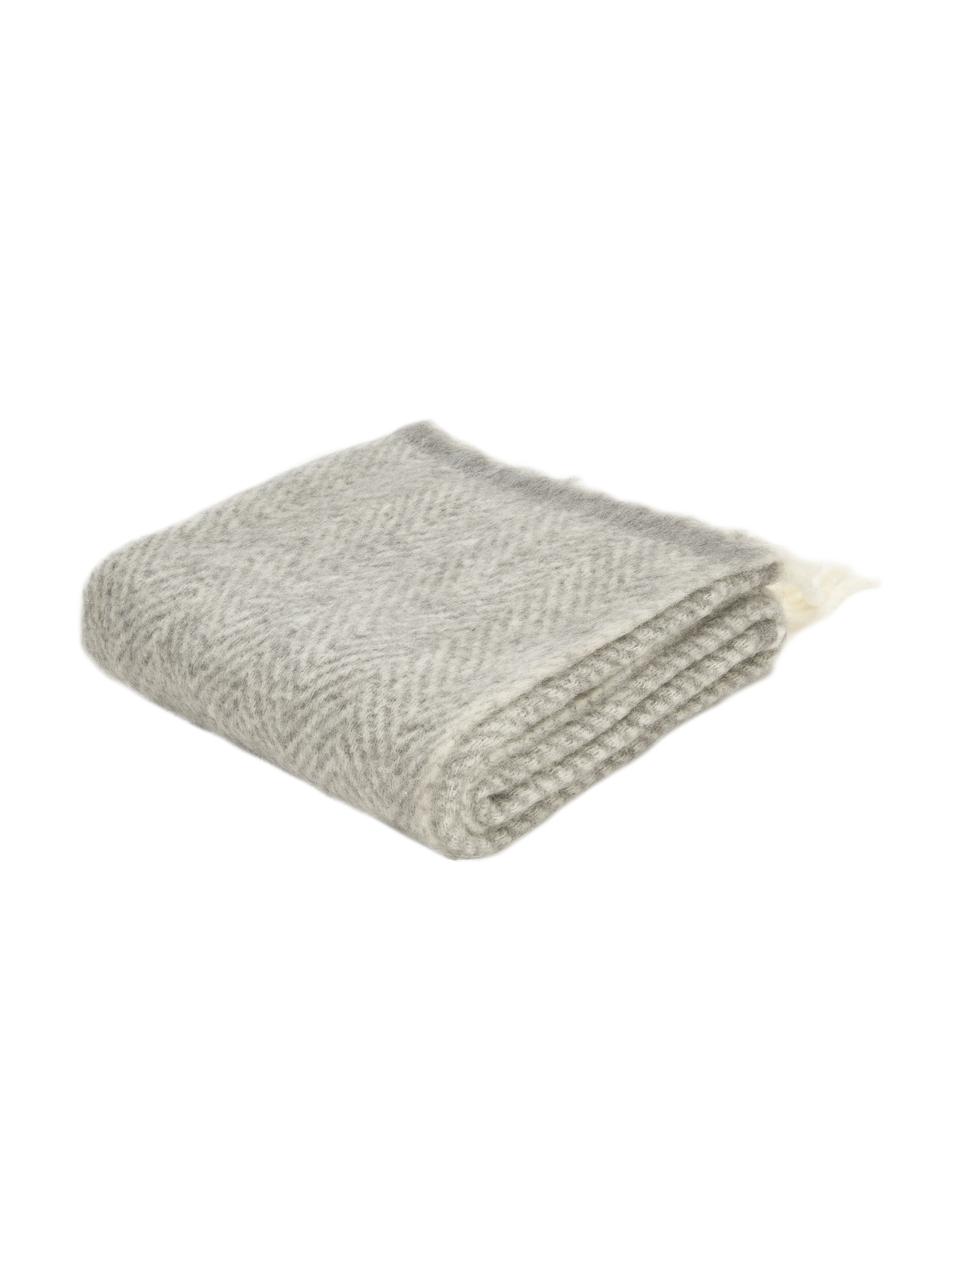 Woll-Decke Mathea mit Fransen in Grau, 60 % Wolle, 25 % Acryl, 15 % Nylon, Grau, L 170 x B 130 cm